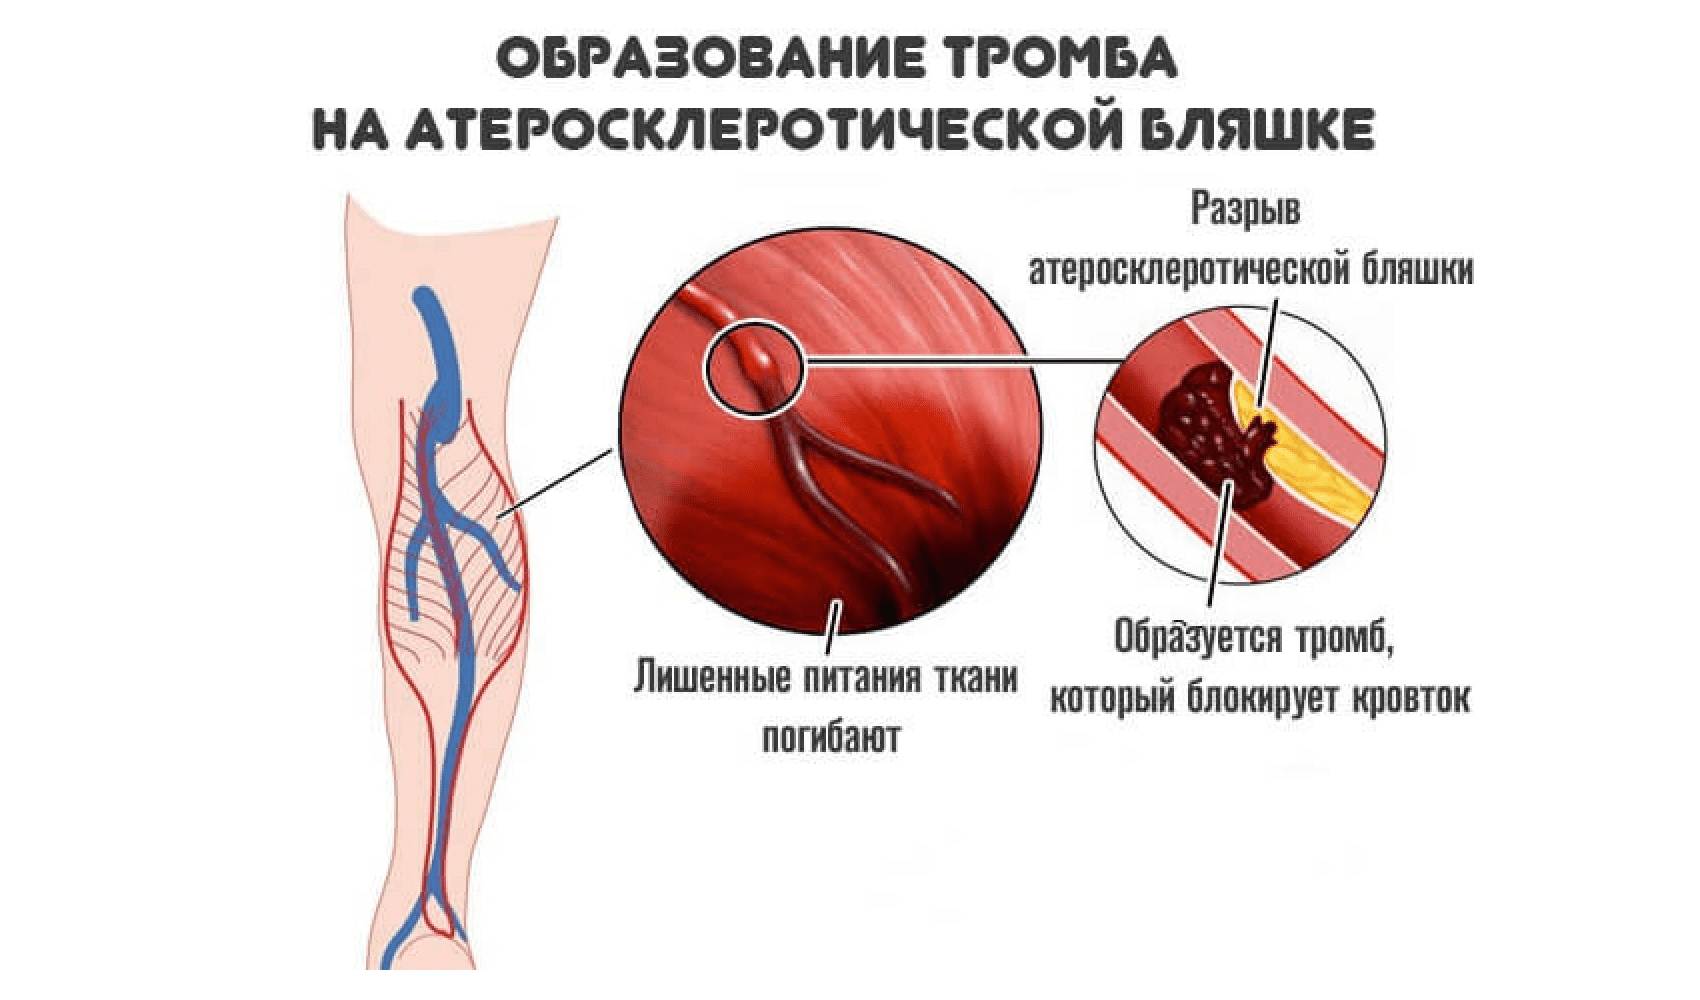 Основной тромб. Образование тромбов в артериях. Атеросклеротическая бляшка и тромб.